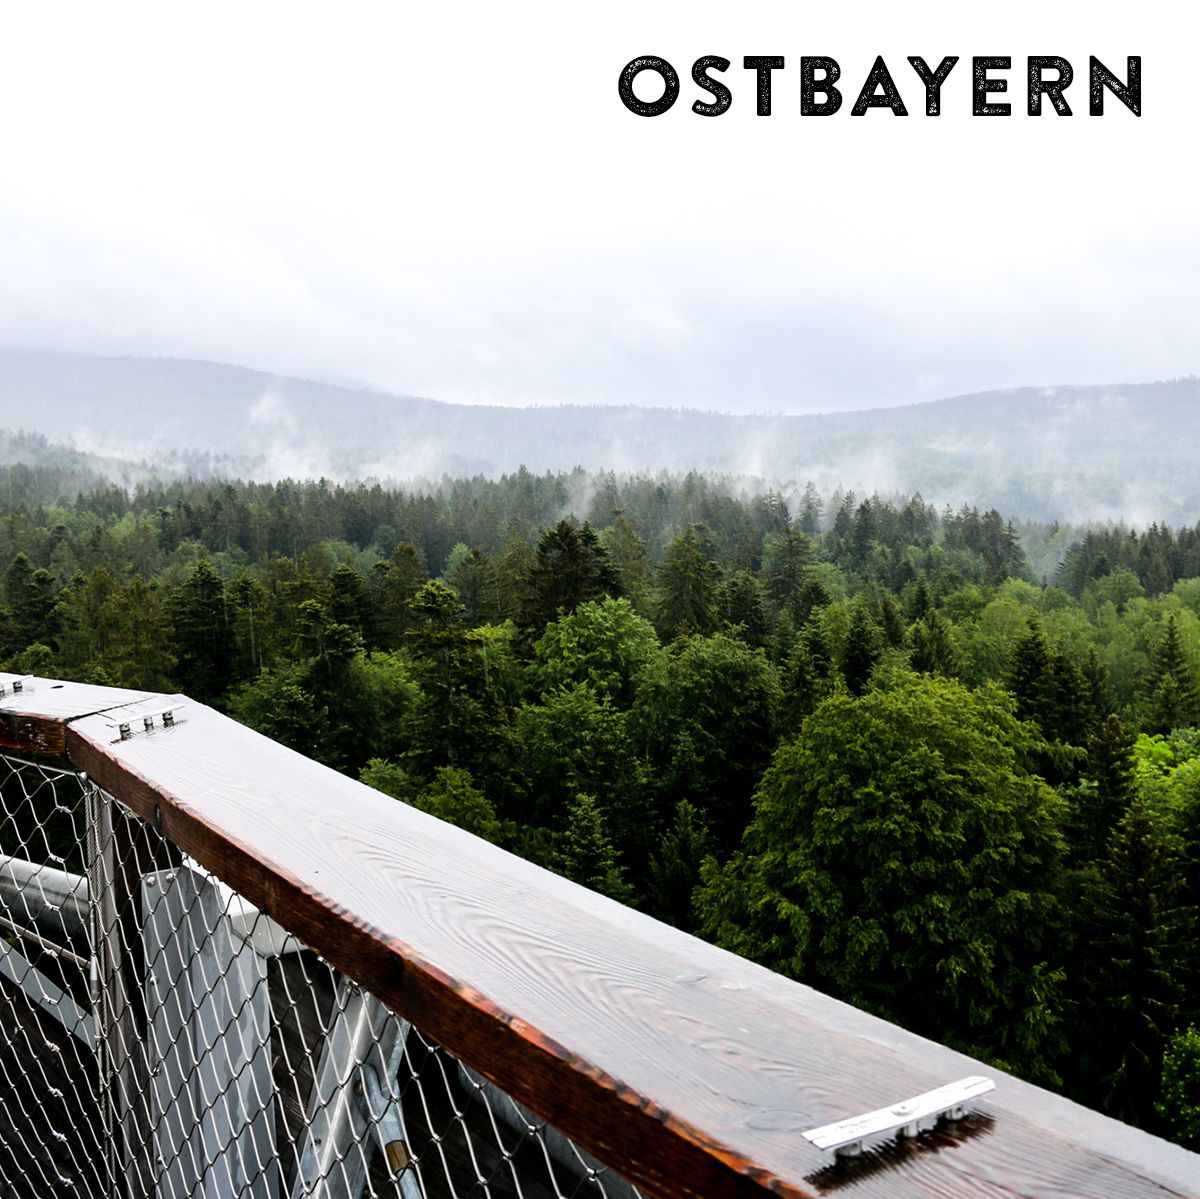 Das Bild wird dominiert von einem Mischwald, der im Hintergrund im Nebel verschwindet. Im Vordergrund befindet sich ein Metallgeländer. Oben rechts im Foto steht der Schriftzug "Ostbayern".